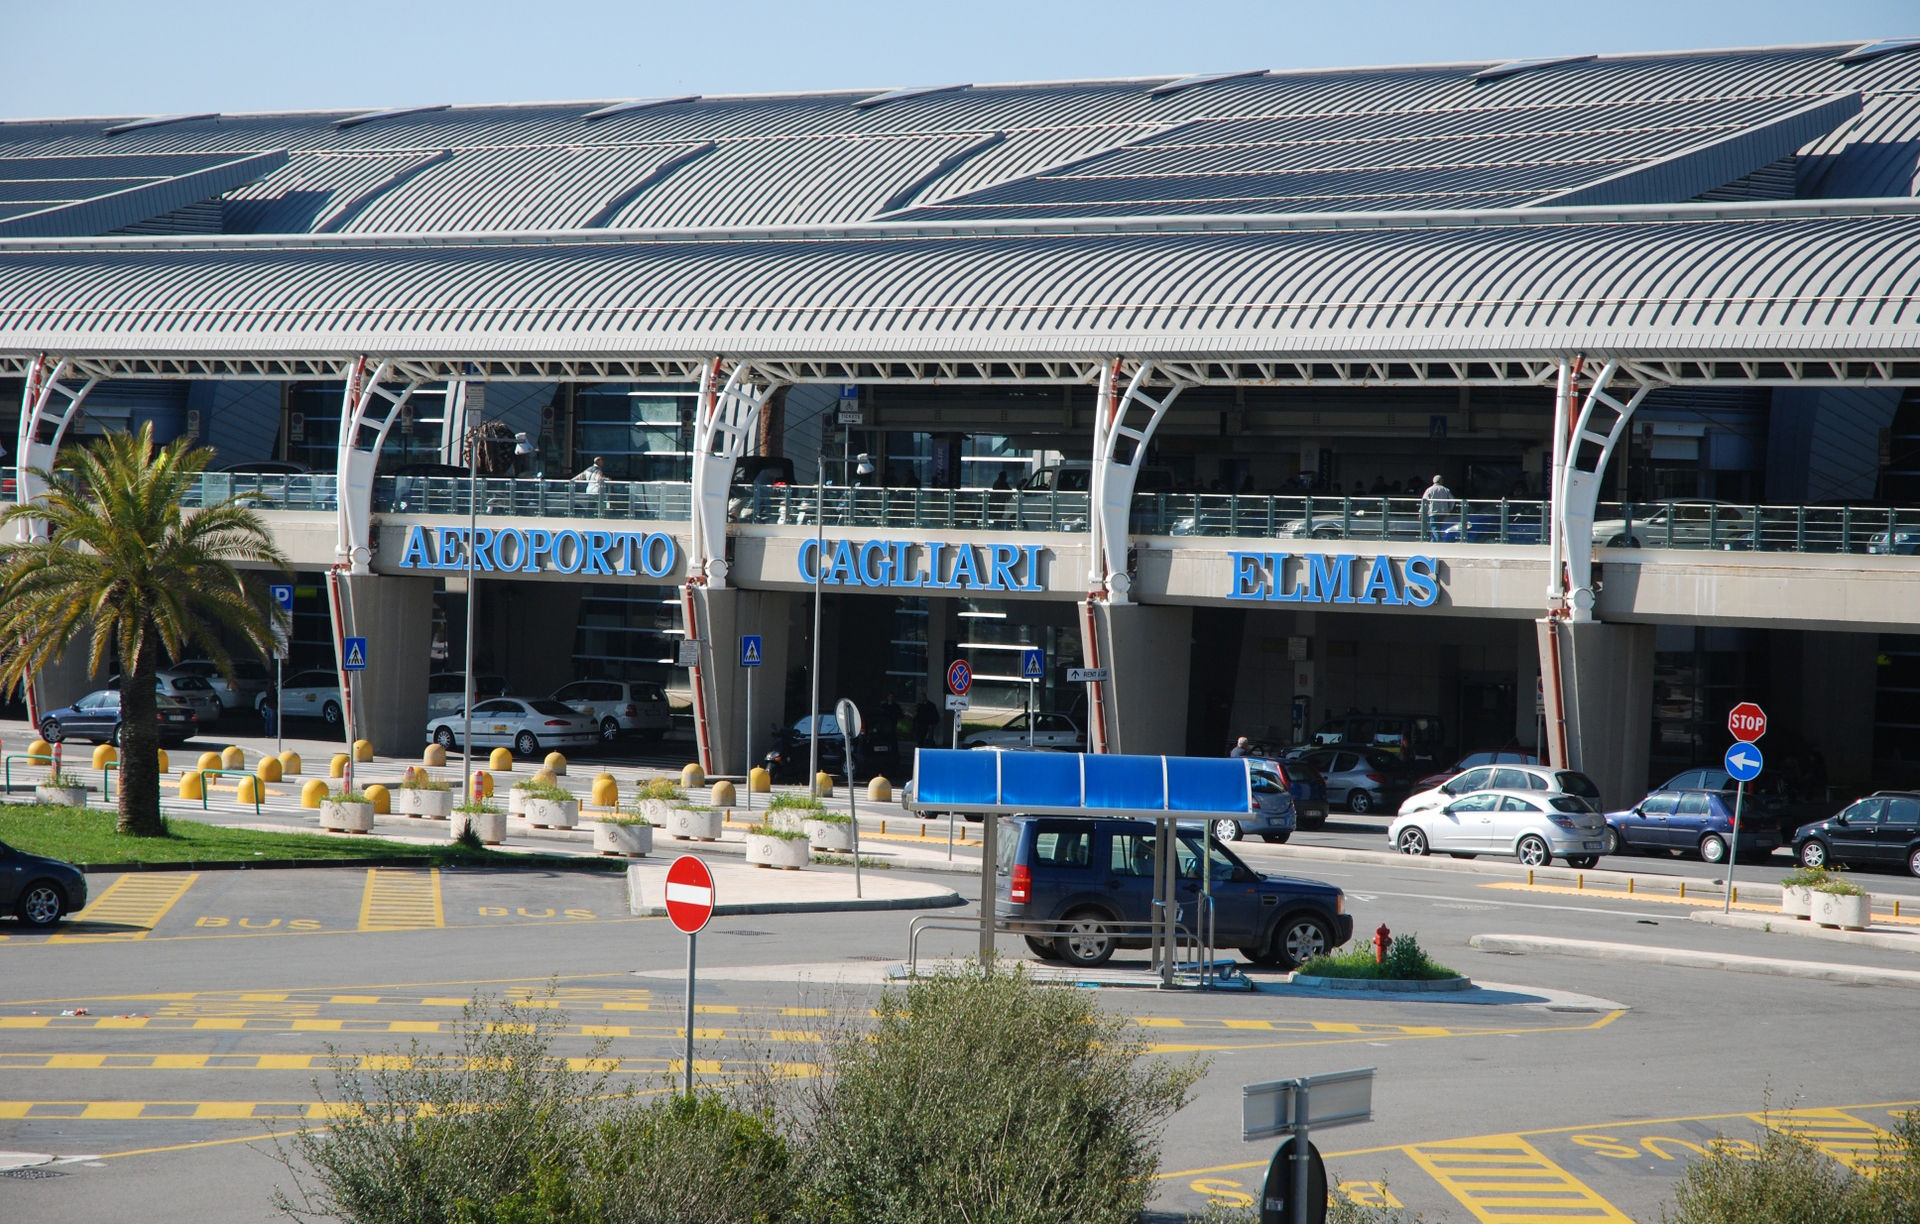 Passeggeri in aumento all'aeroporto di Elmas: è record assoluto